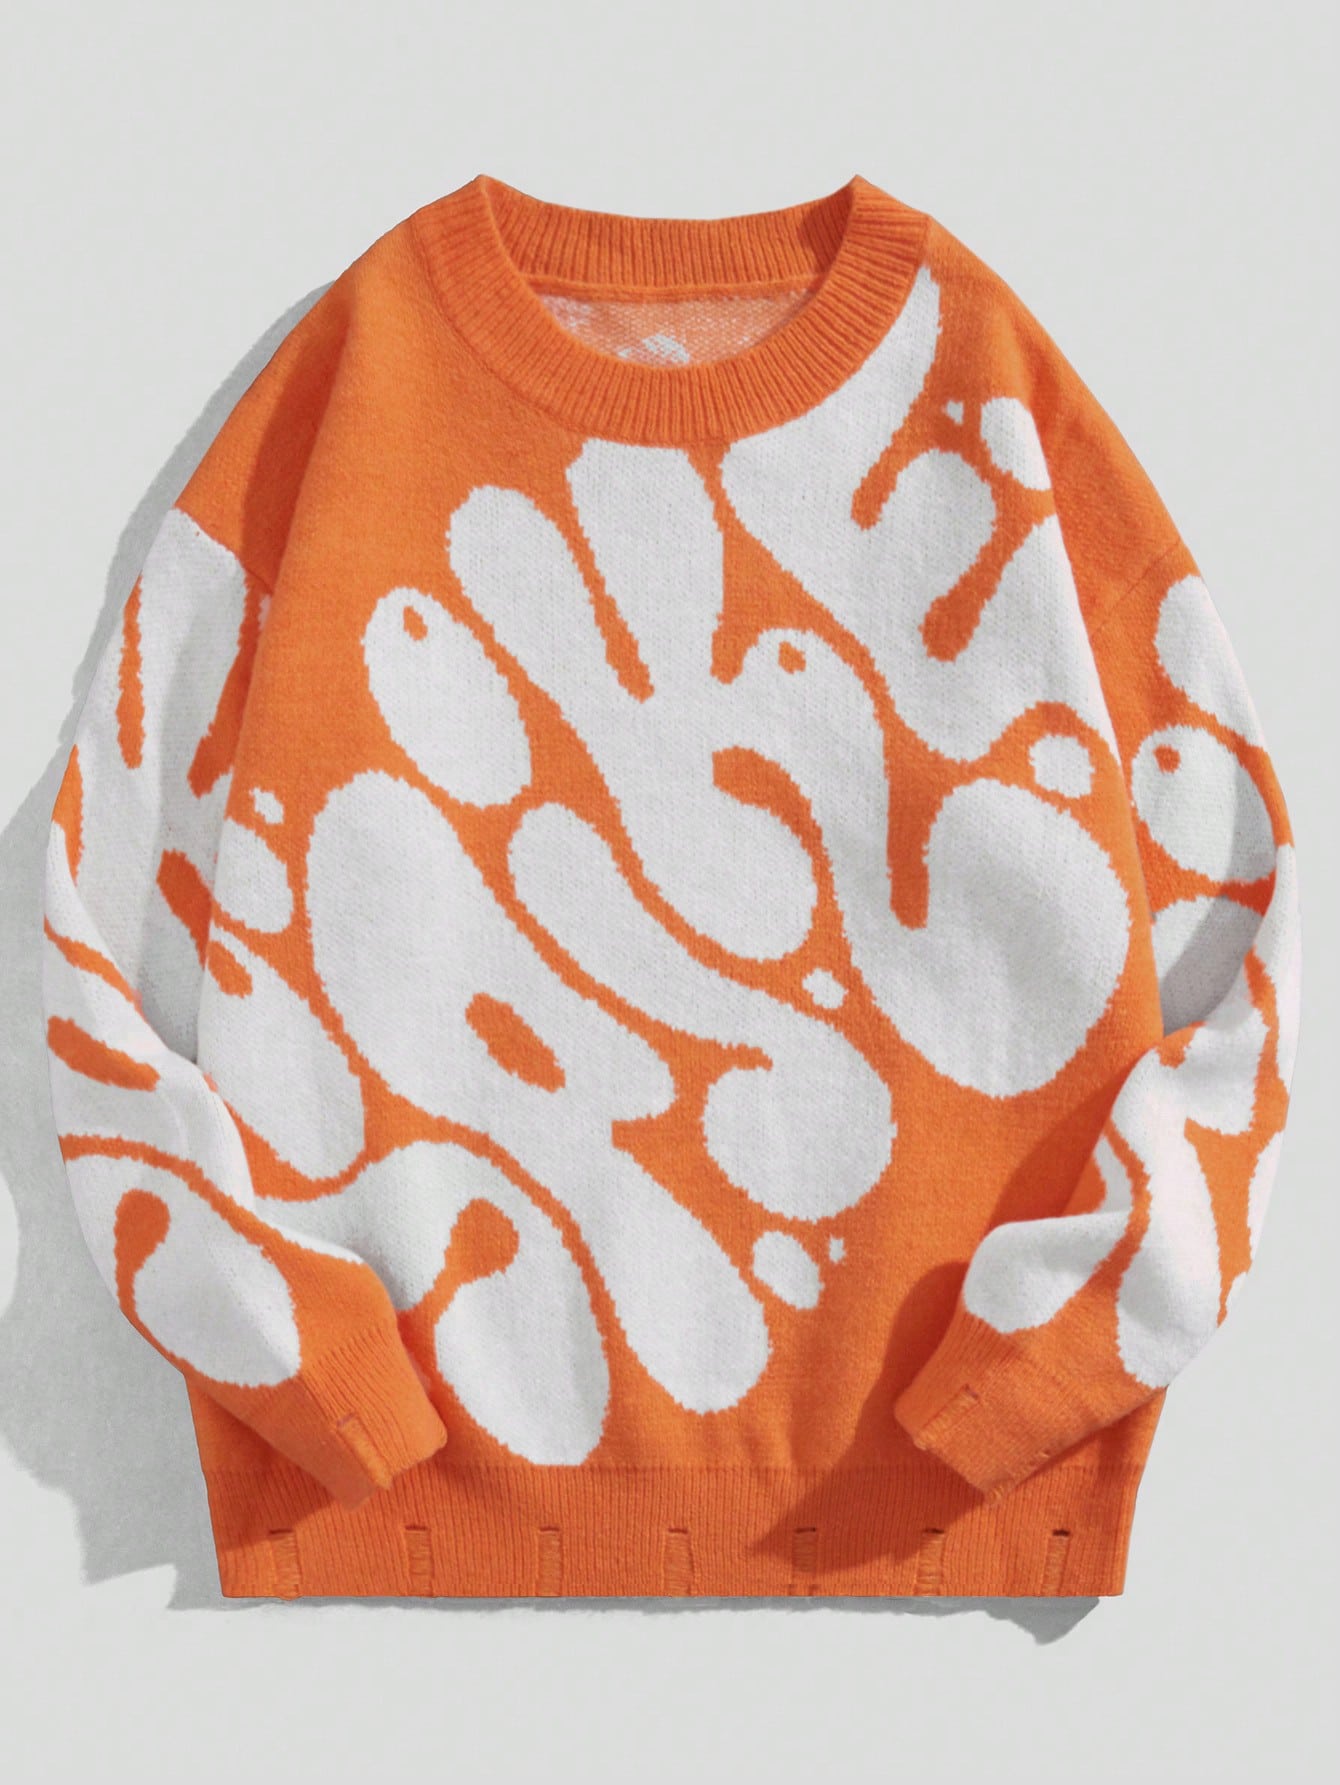 Мужской свитер с круглым вырезом ROMWE Street Life с буквенным узором, апельсин мужской свитер с круглым вырезом длинным рукавом флисовой подкладкой и манжетами в рубчик зимний плотный теплый свитер с узором в клетку